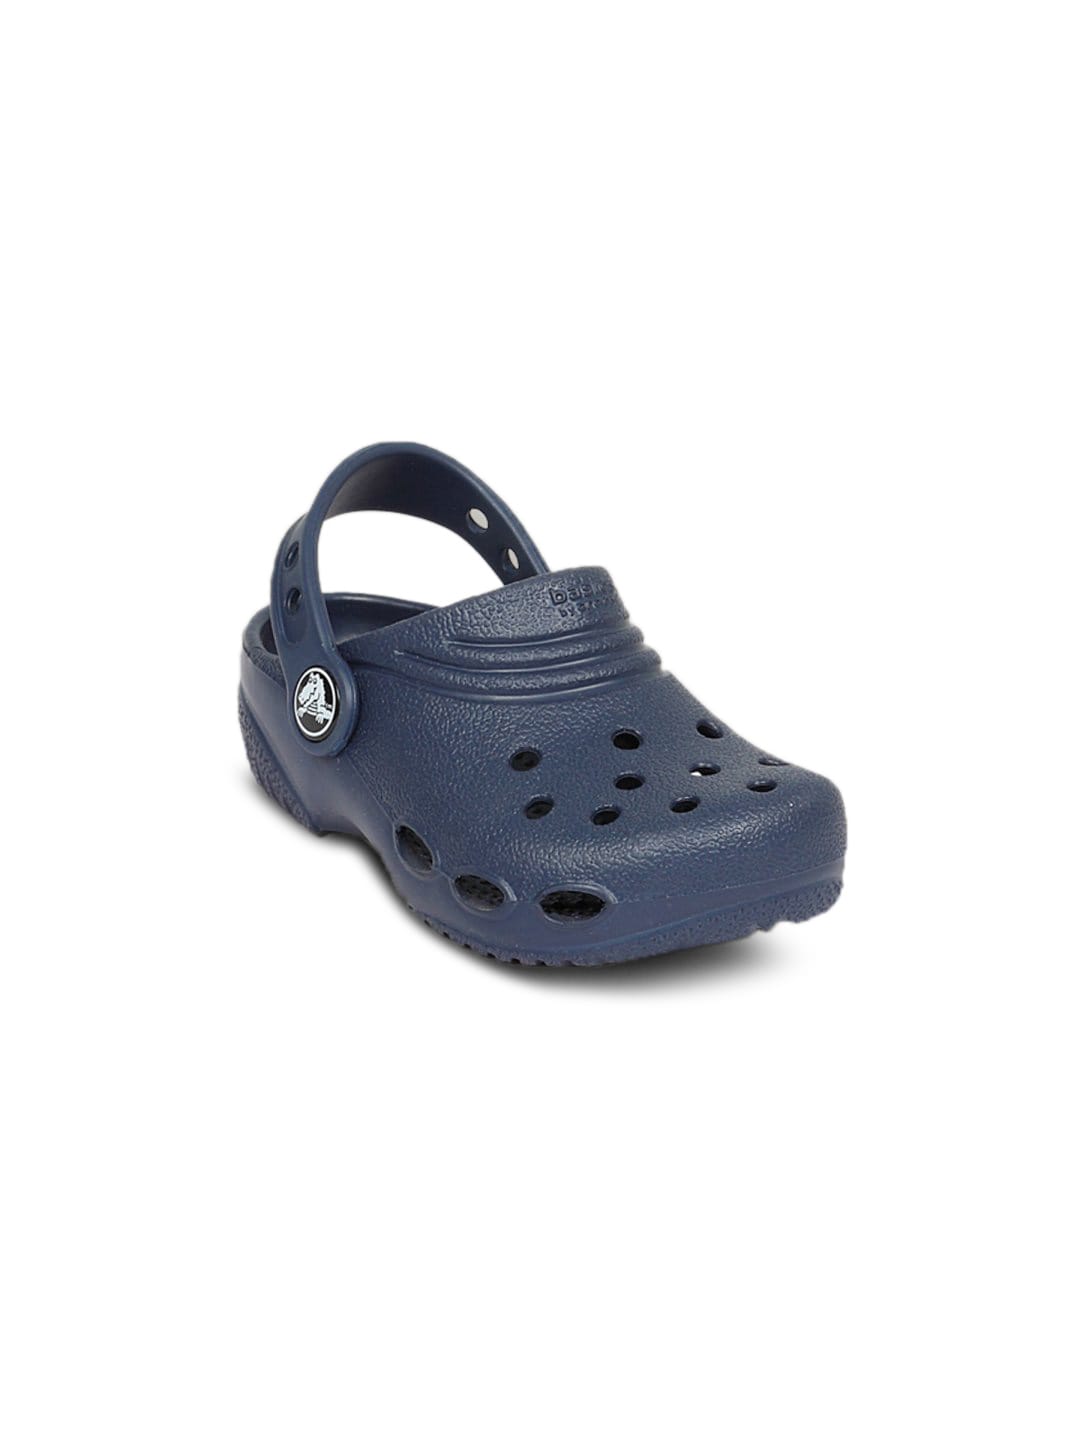 Crocs Kids Navy Clogs